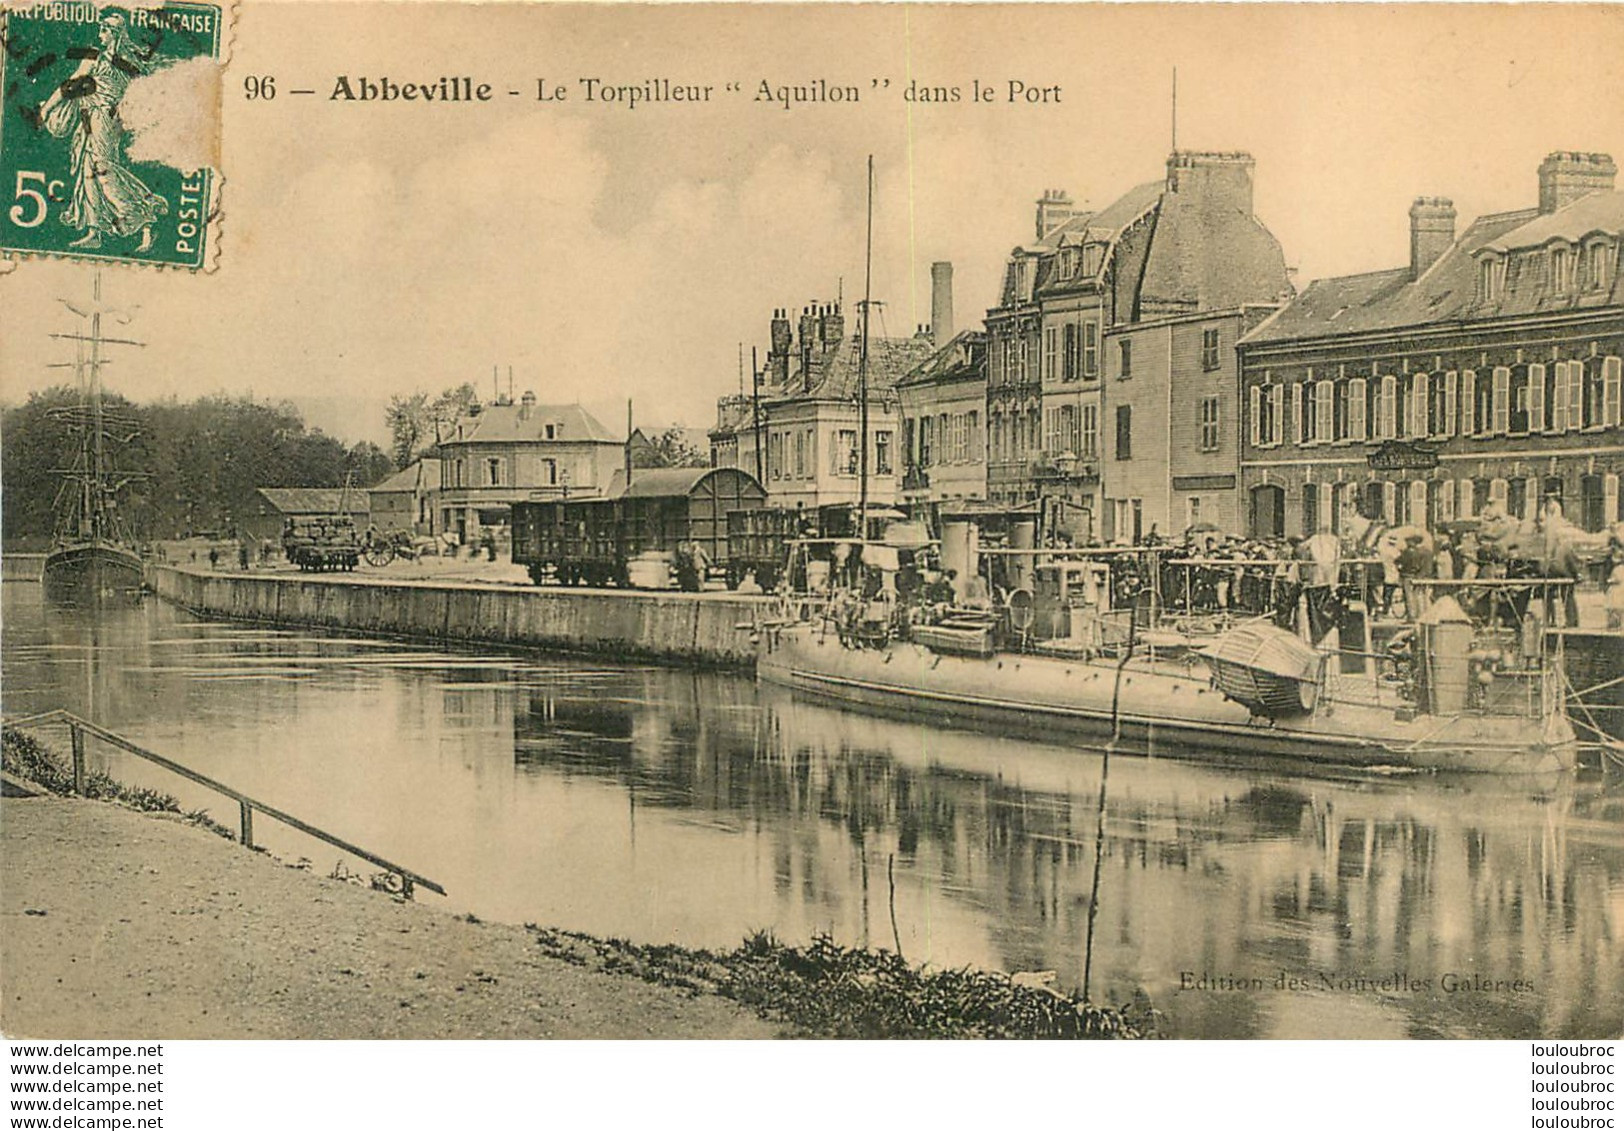 ABBEVILLE LE TORPILLEUR AQUILON DANS LE PORT - Abbeville